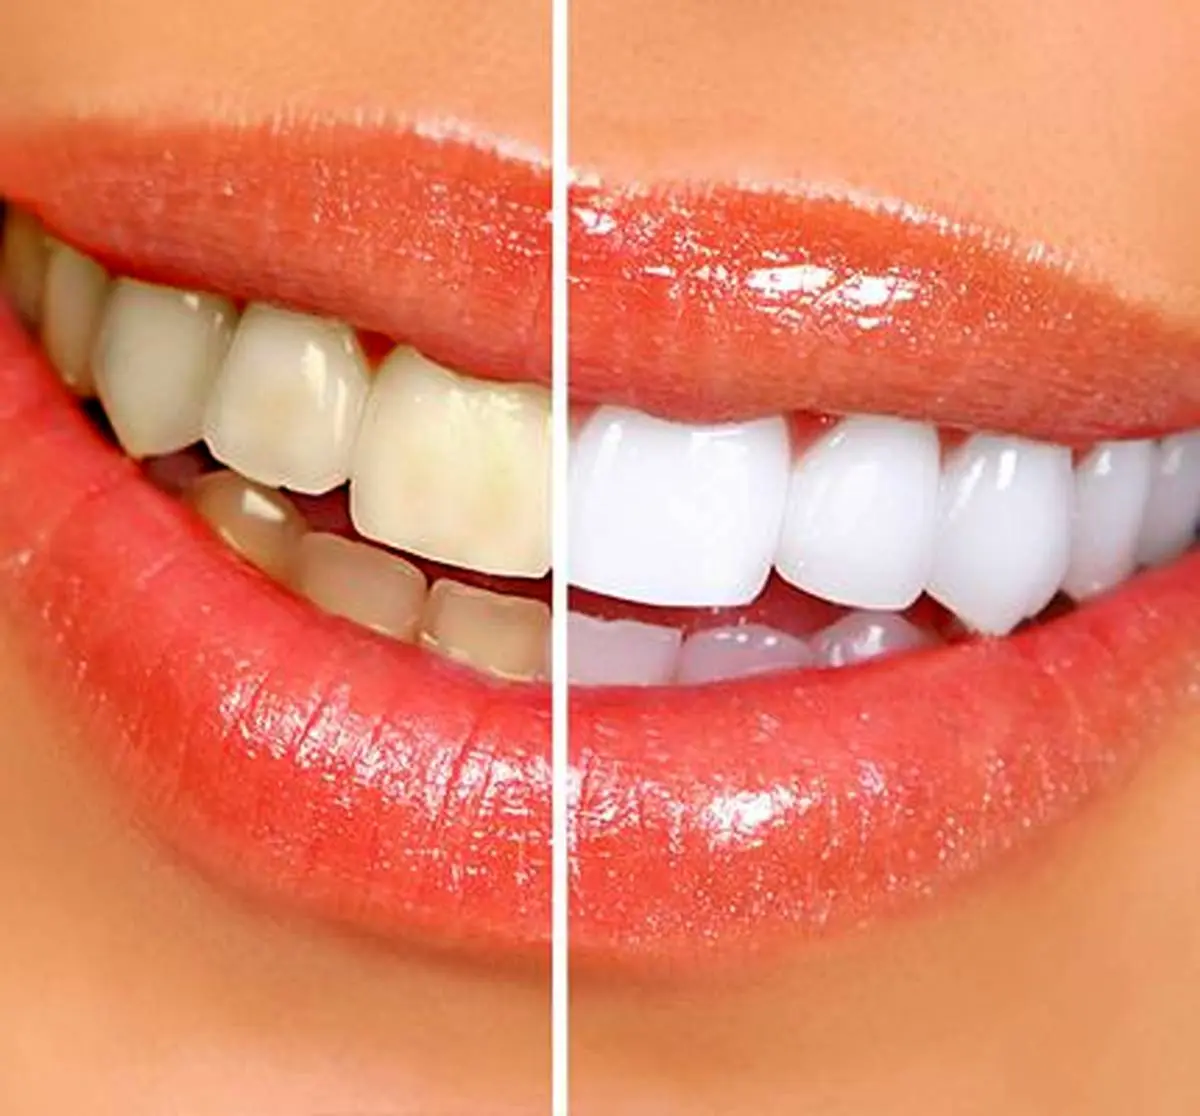 شماهم دنبال راهی برای سفید کردن دندانتان می باشید ؟ | دو راه حل تضمینی برای سفید کردن دندان در خانه